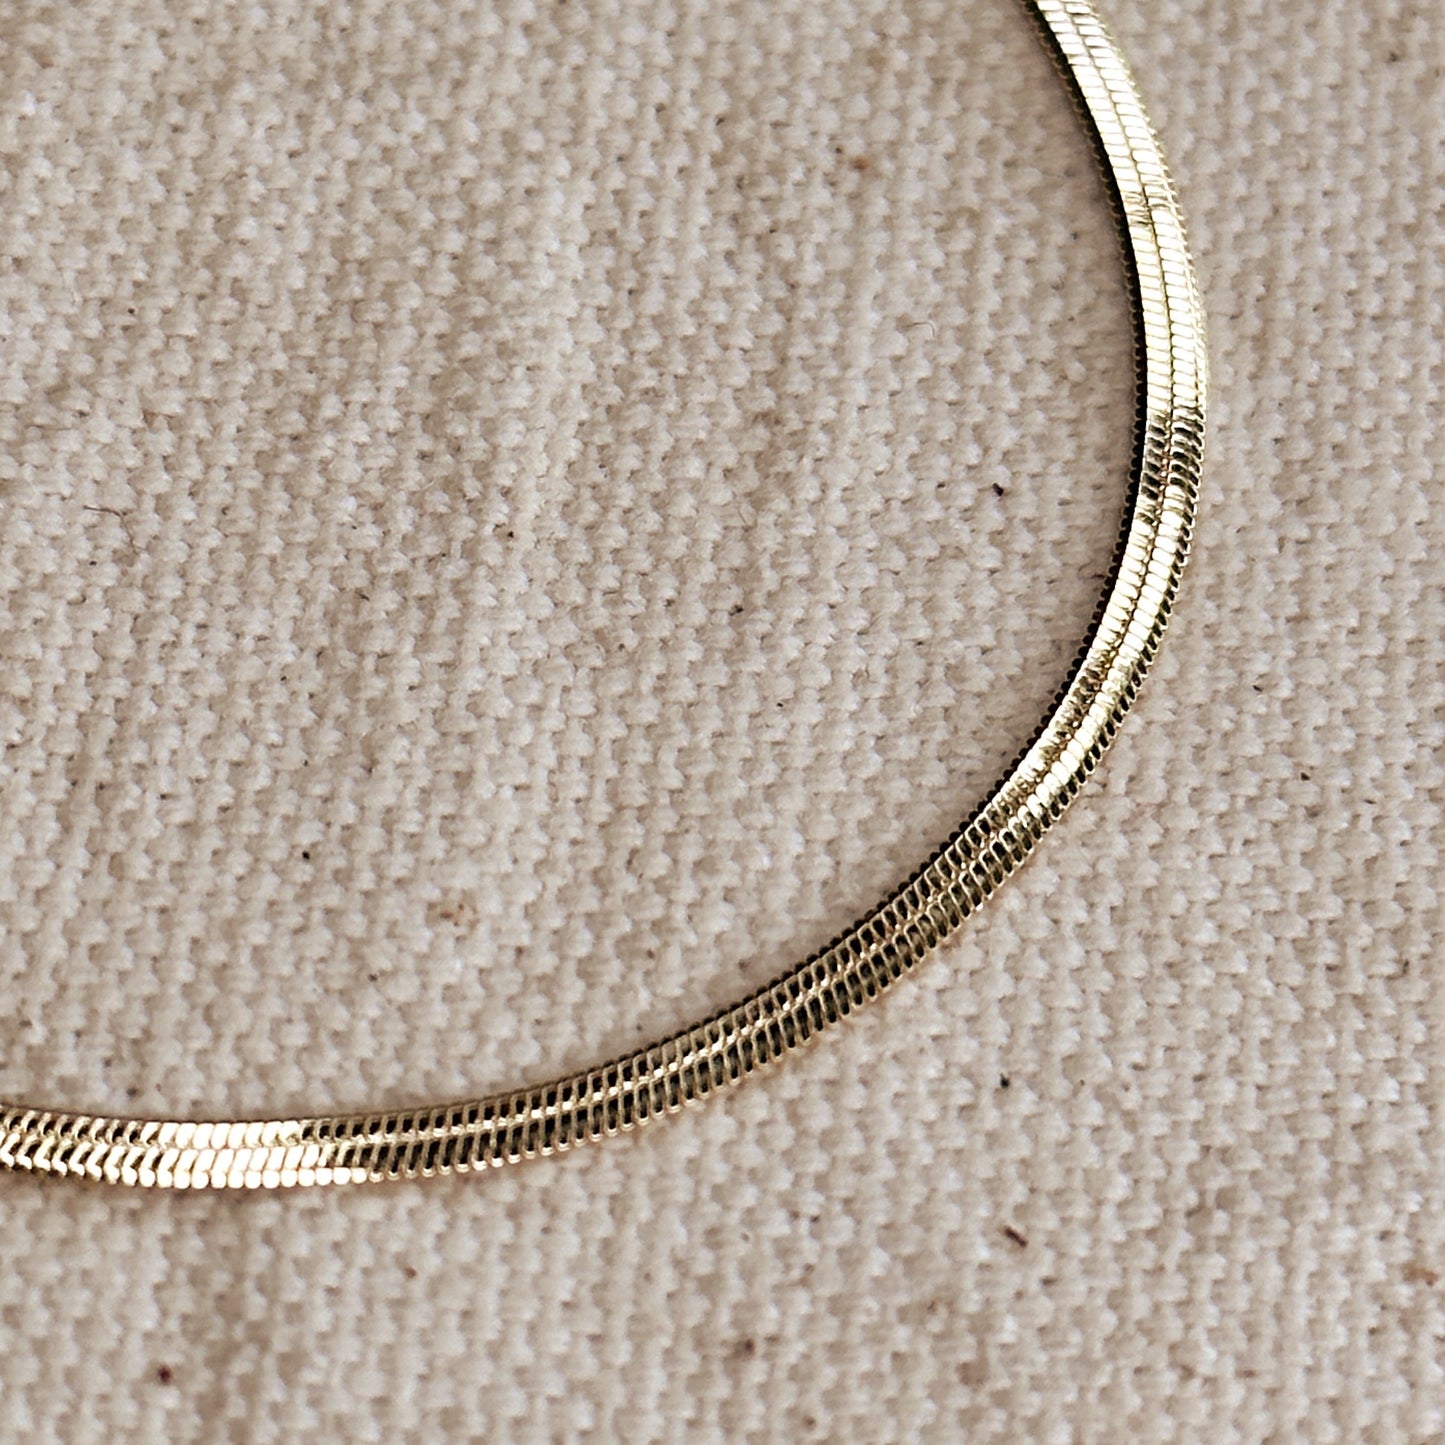 18k Gold Filled 2.0mm Thickness Herringbone Bracelet